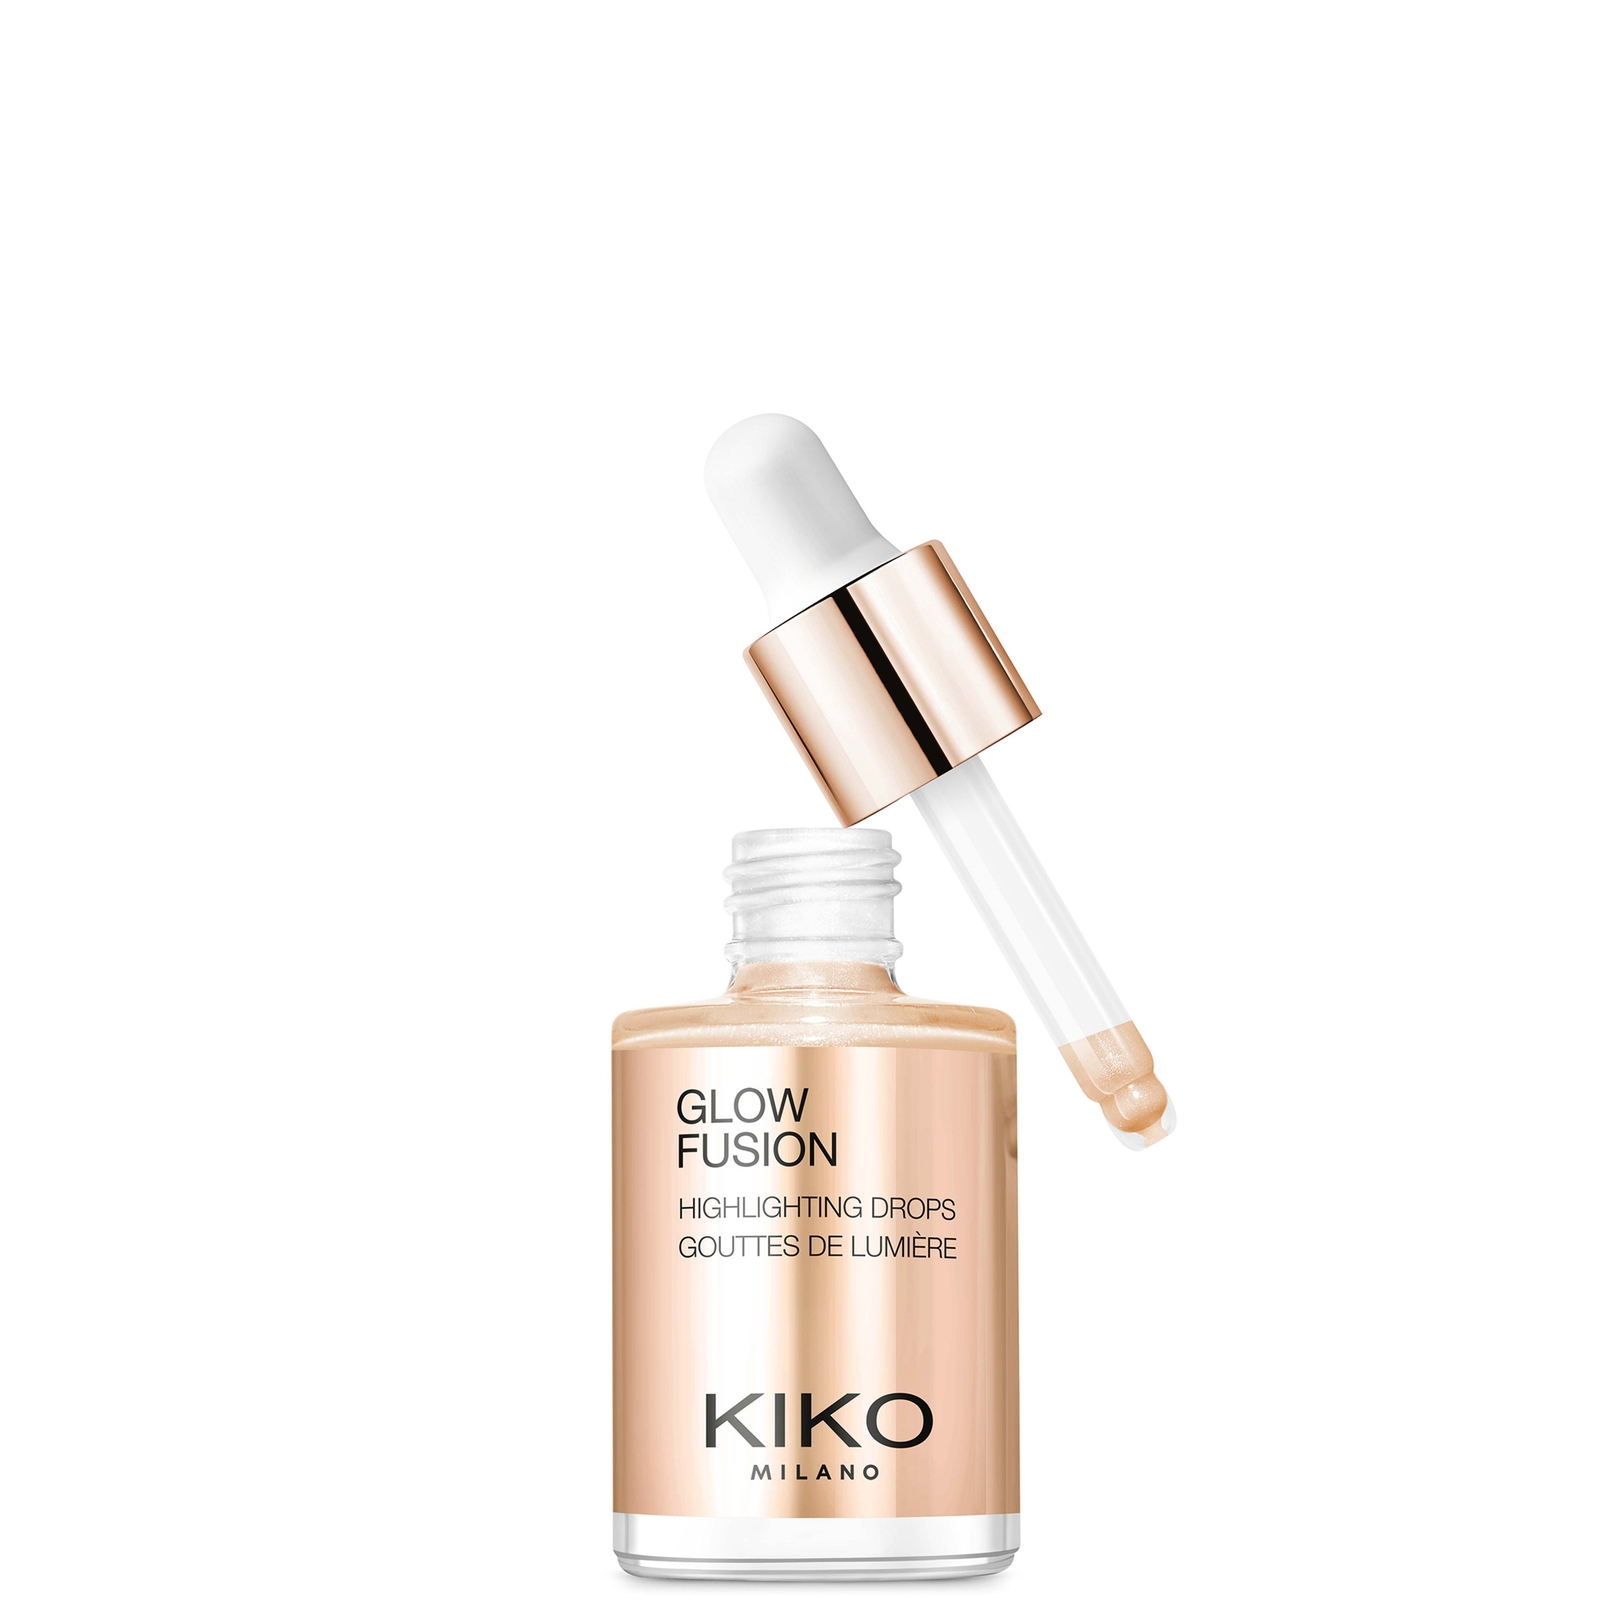 KIKO Milano Glow Fusion Highlighting Drops 10ml (Various Shades) - 03 Gold Mine